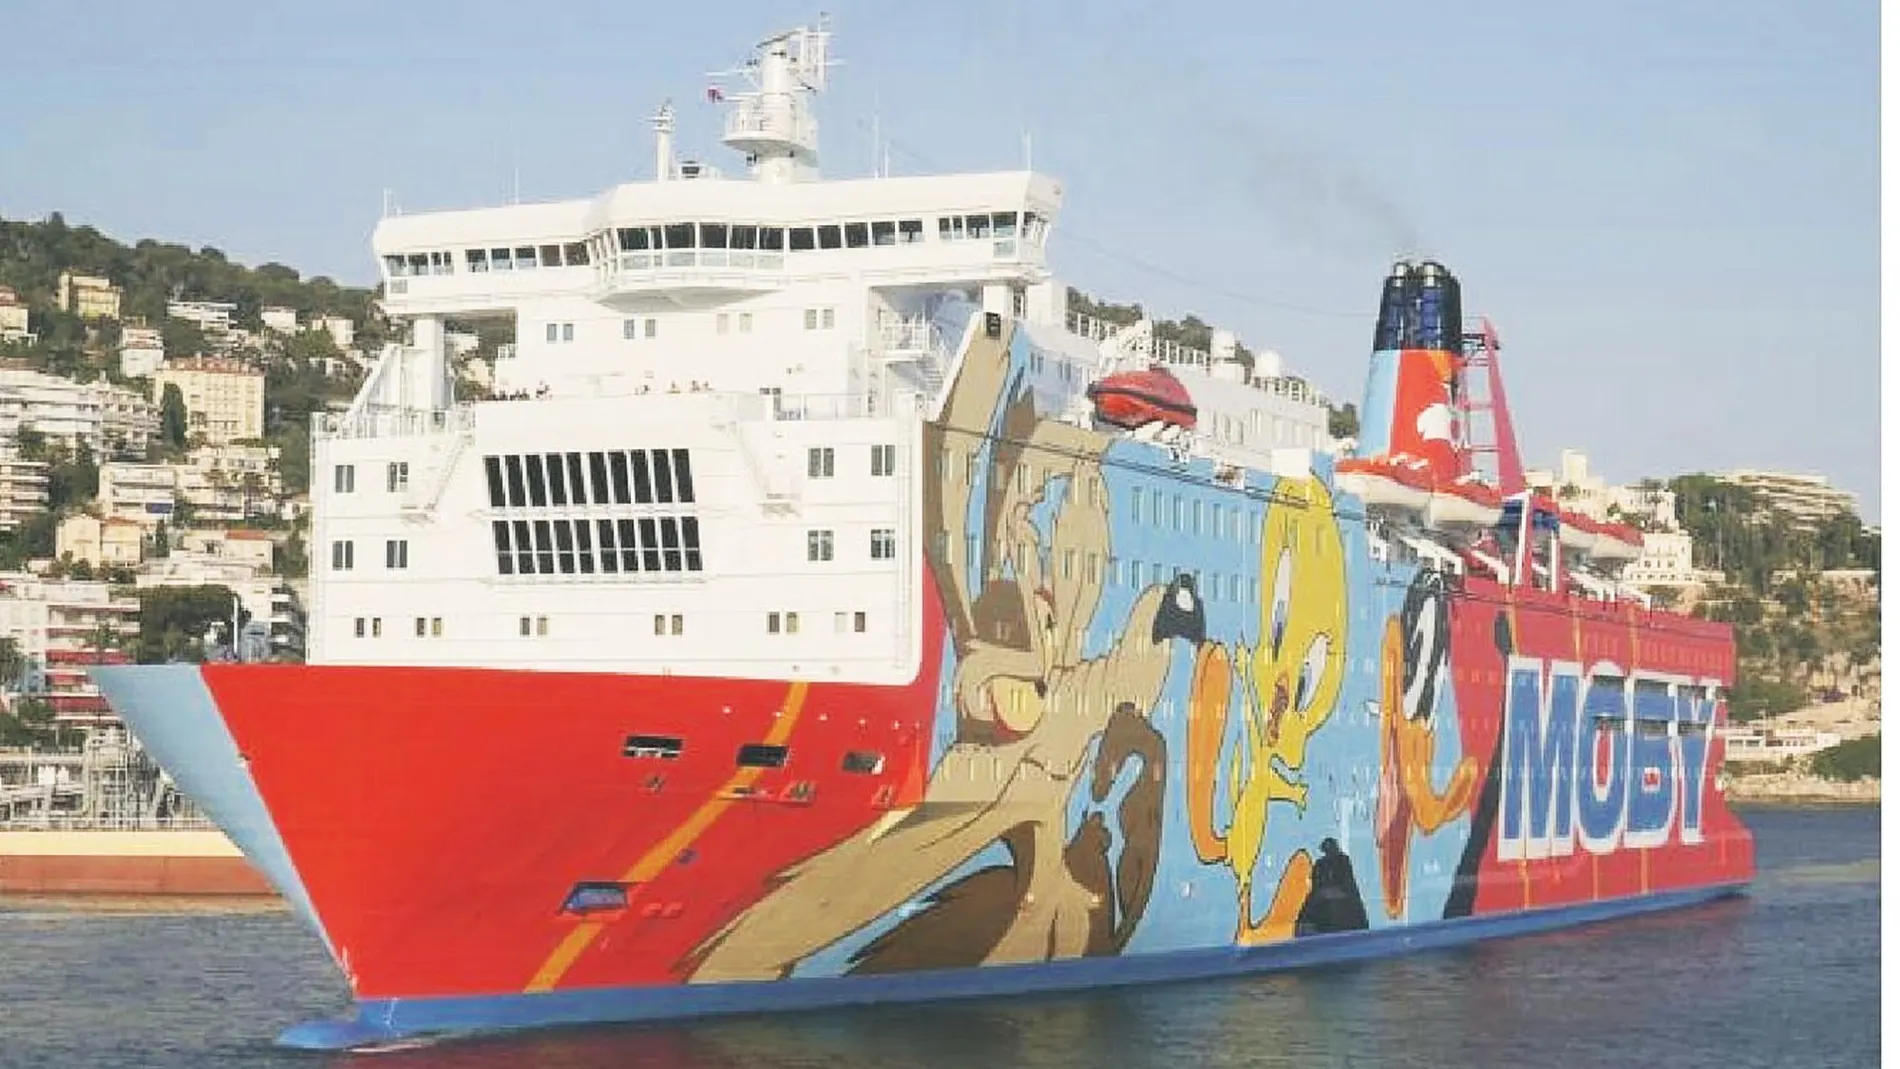 El ferry «Moby Dada» llegó al Puerto de Barcelona el 21 de septiembre de 2017 y estuvo allí 57 días